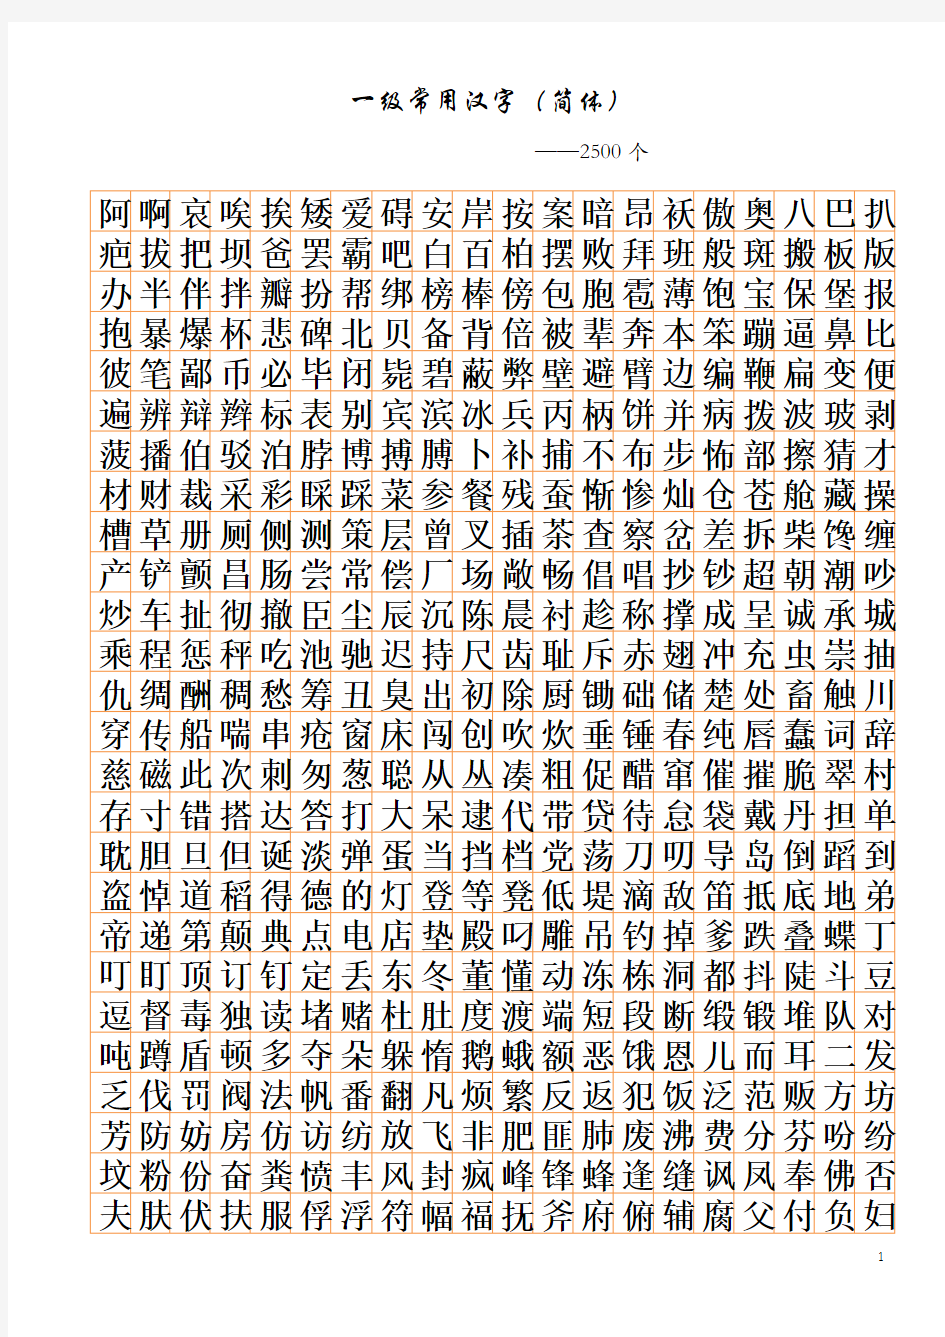 3500个常用汉字简繁及行楷对照表